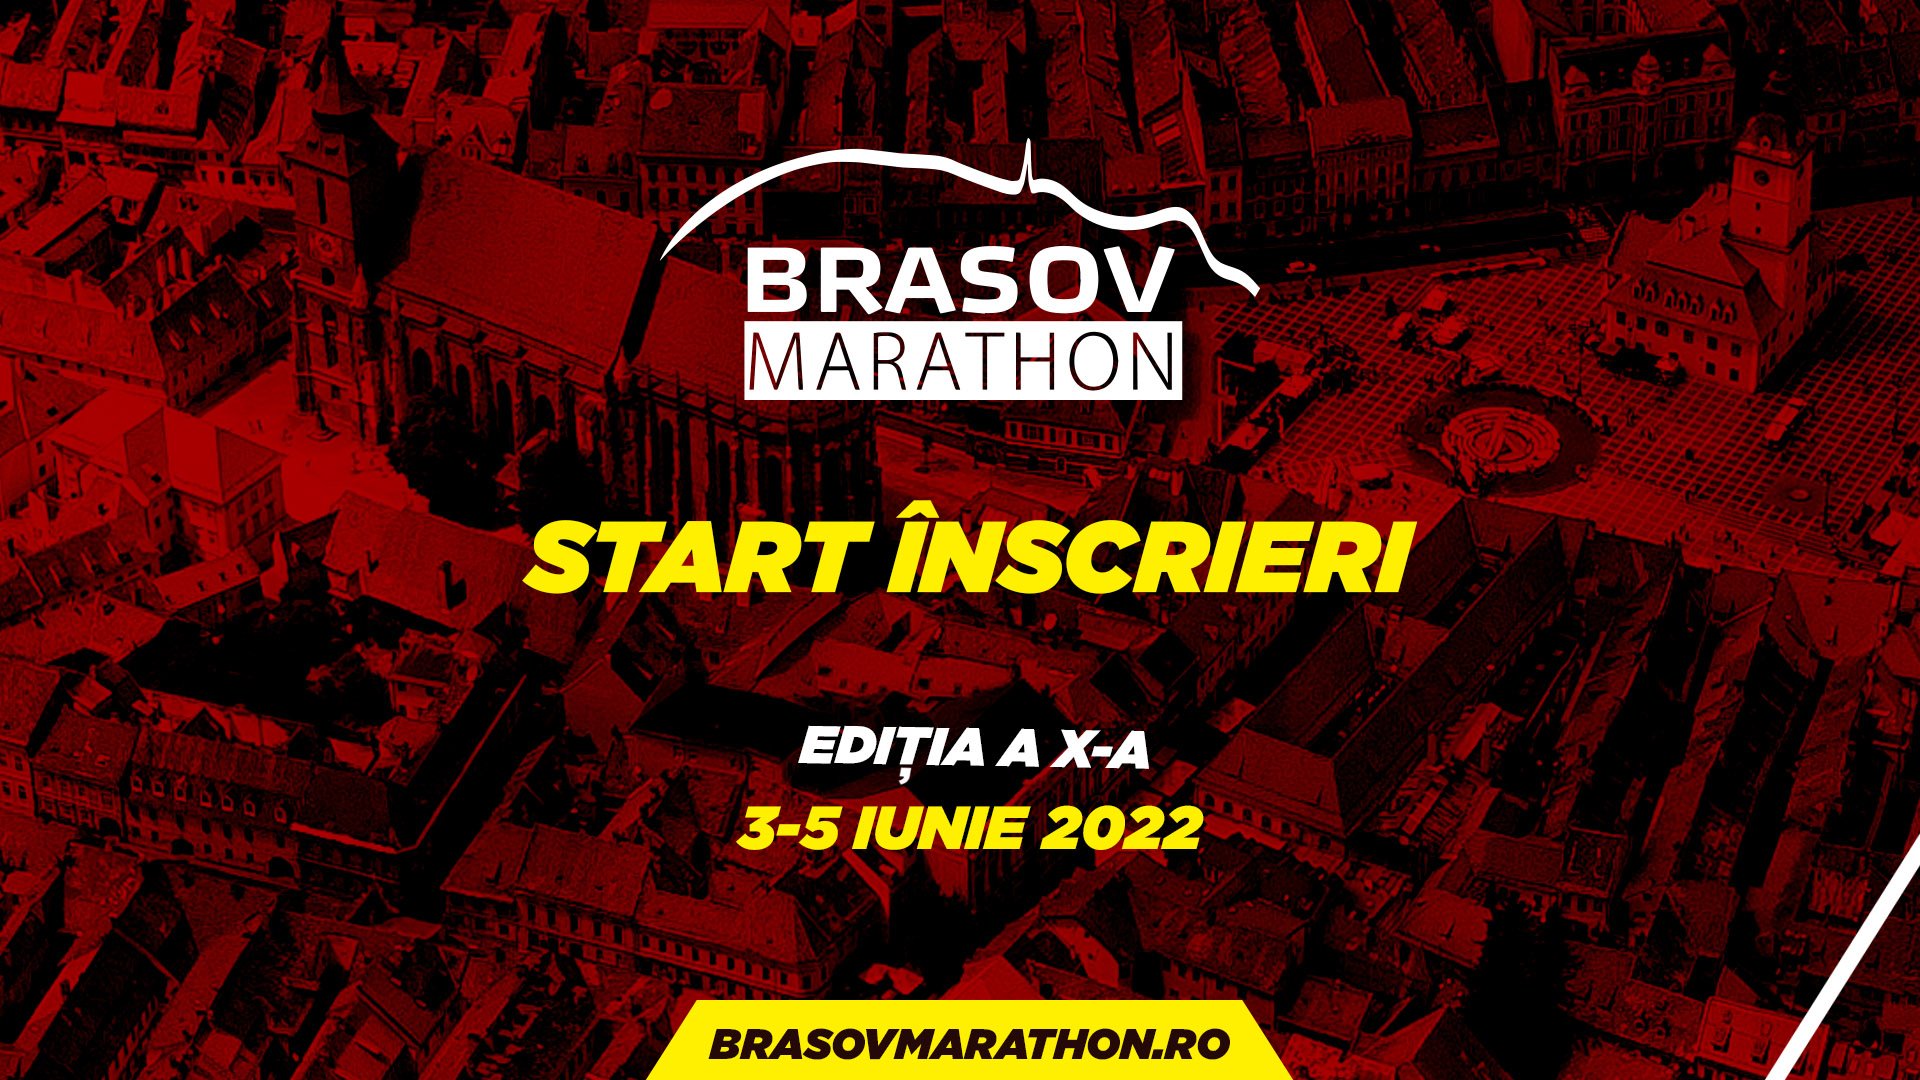 Pagina oficială Brașov Marathon